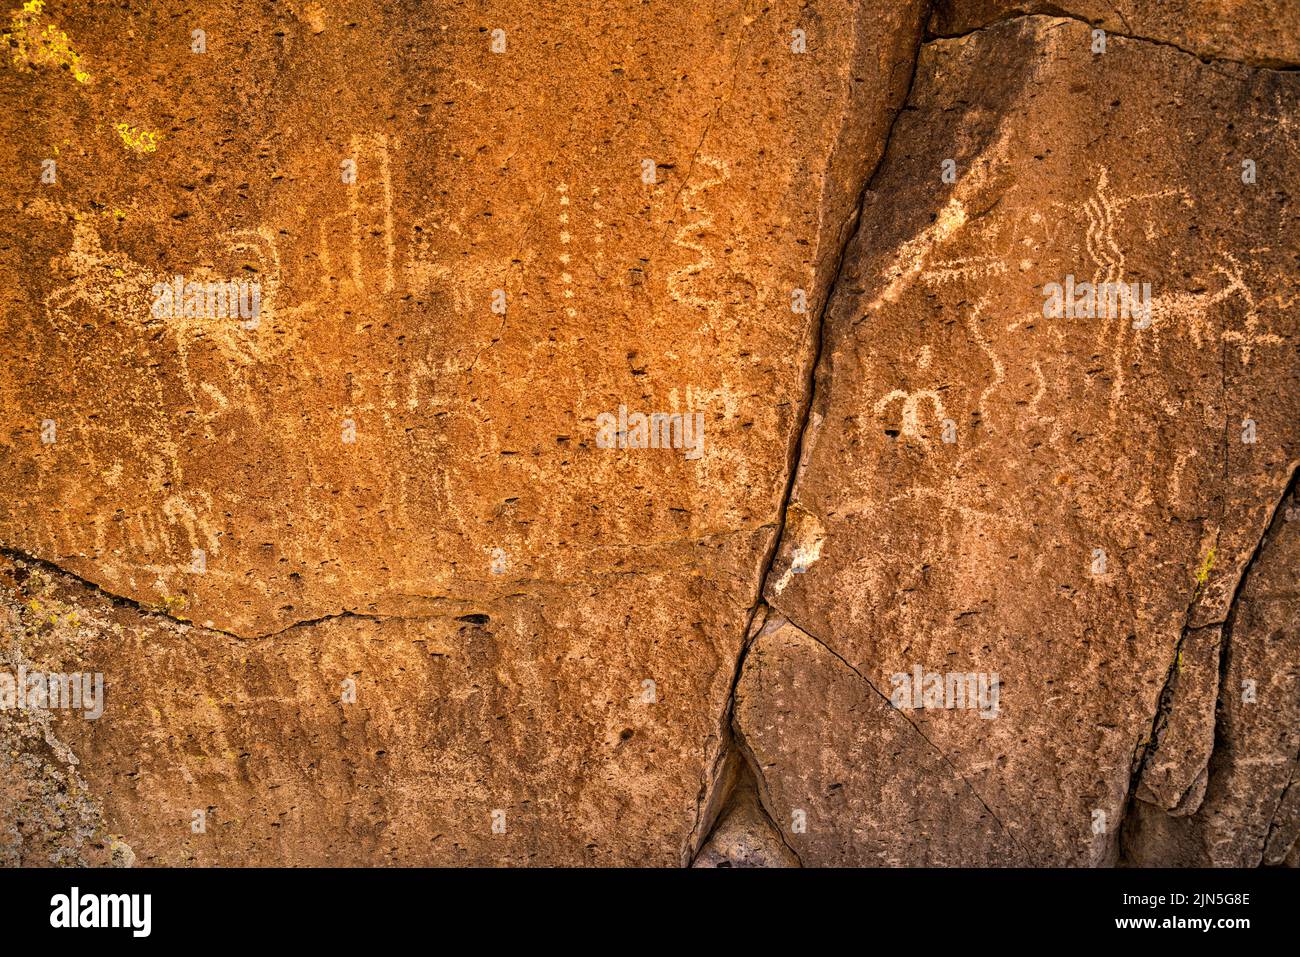 Panel de petroglifos en el monolito de toba, Distrito Arqueológico Mt Irish, Locus Oriental, Monumento Nacional Basin and Range, Nevada, EE.UU Foto de stock